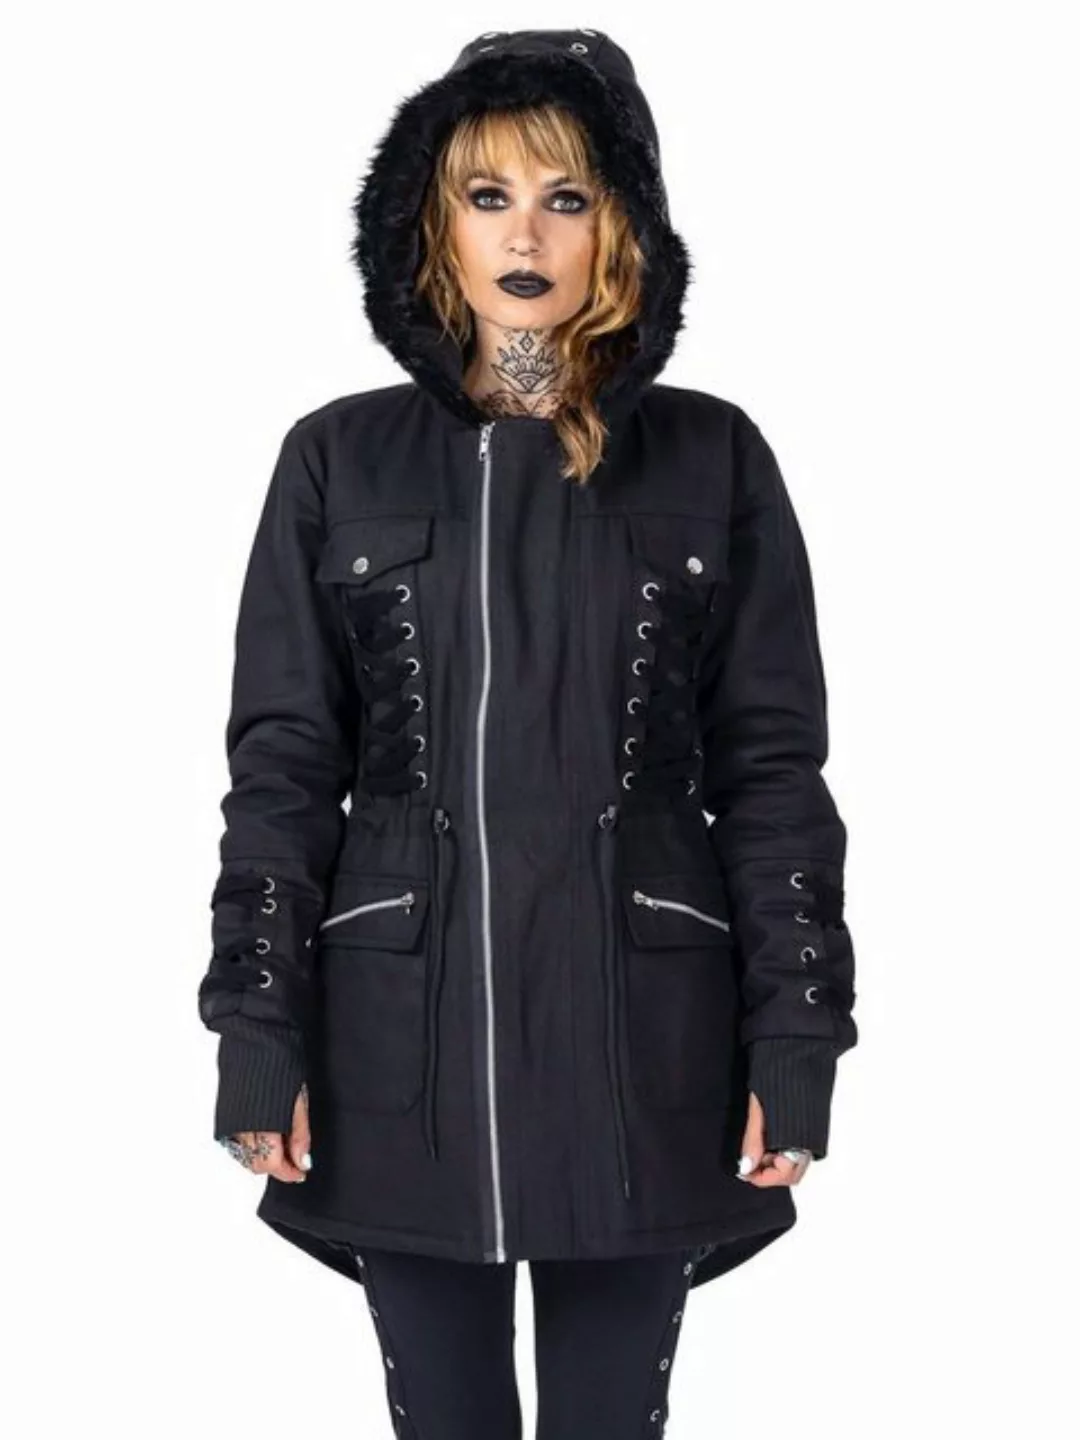 Vixxsin Blouson Emre Jacke Gothic Metal Schnürung günstig online kaufen